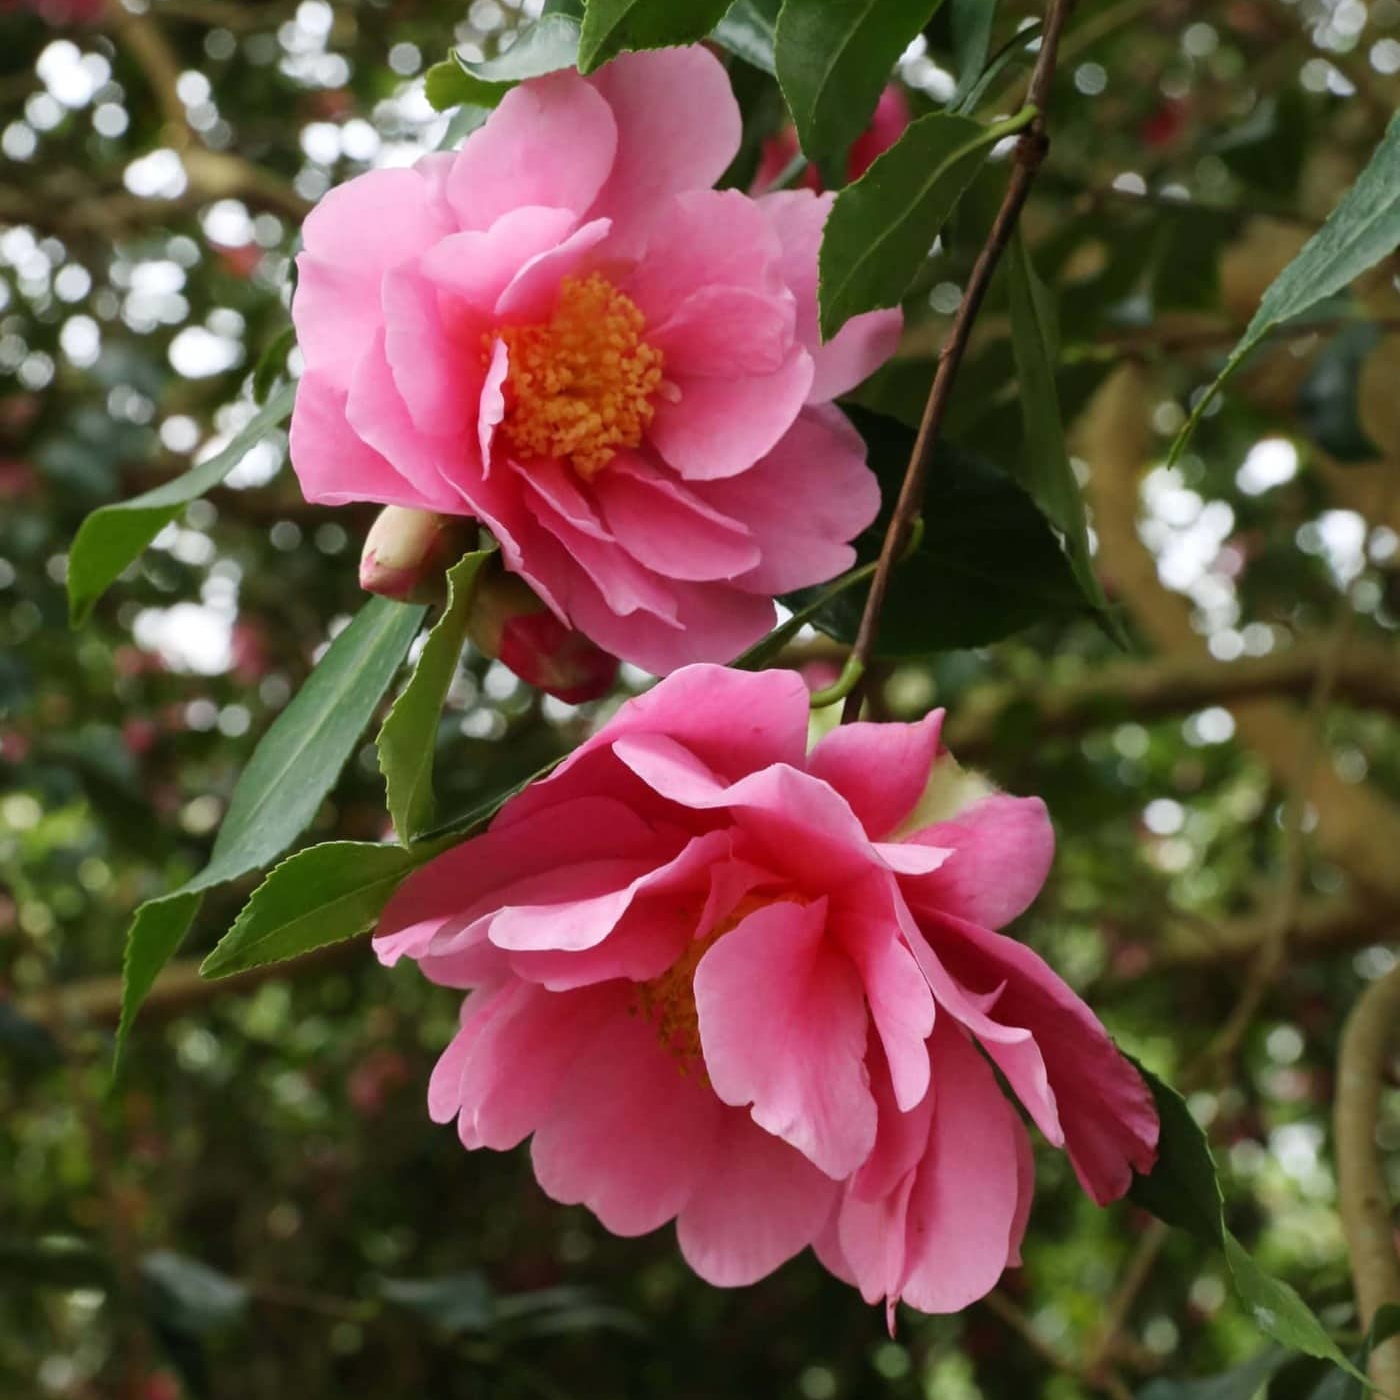 Camellia reticulata × sasanqua 'Dream Girl' winter flowering camellias